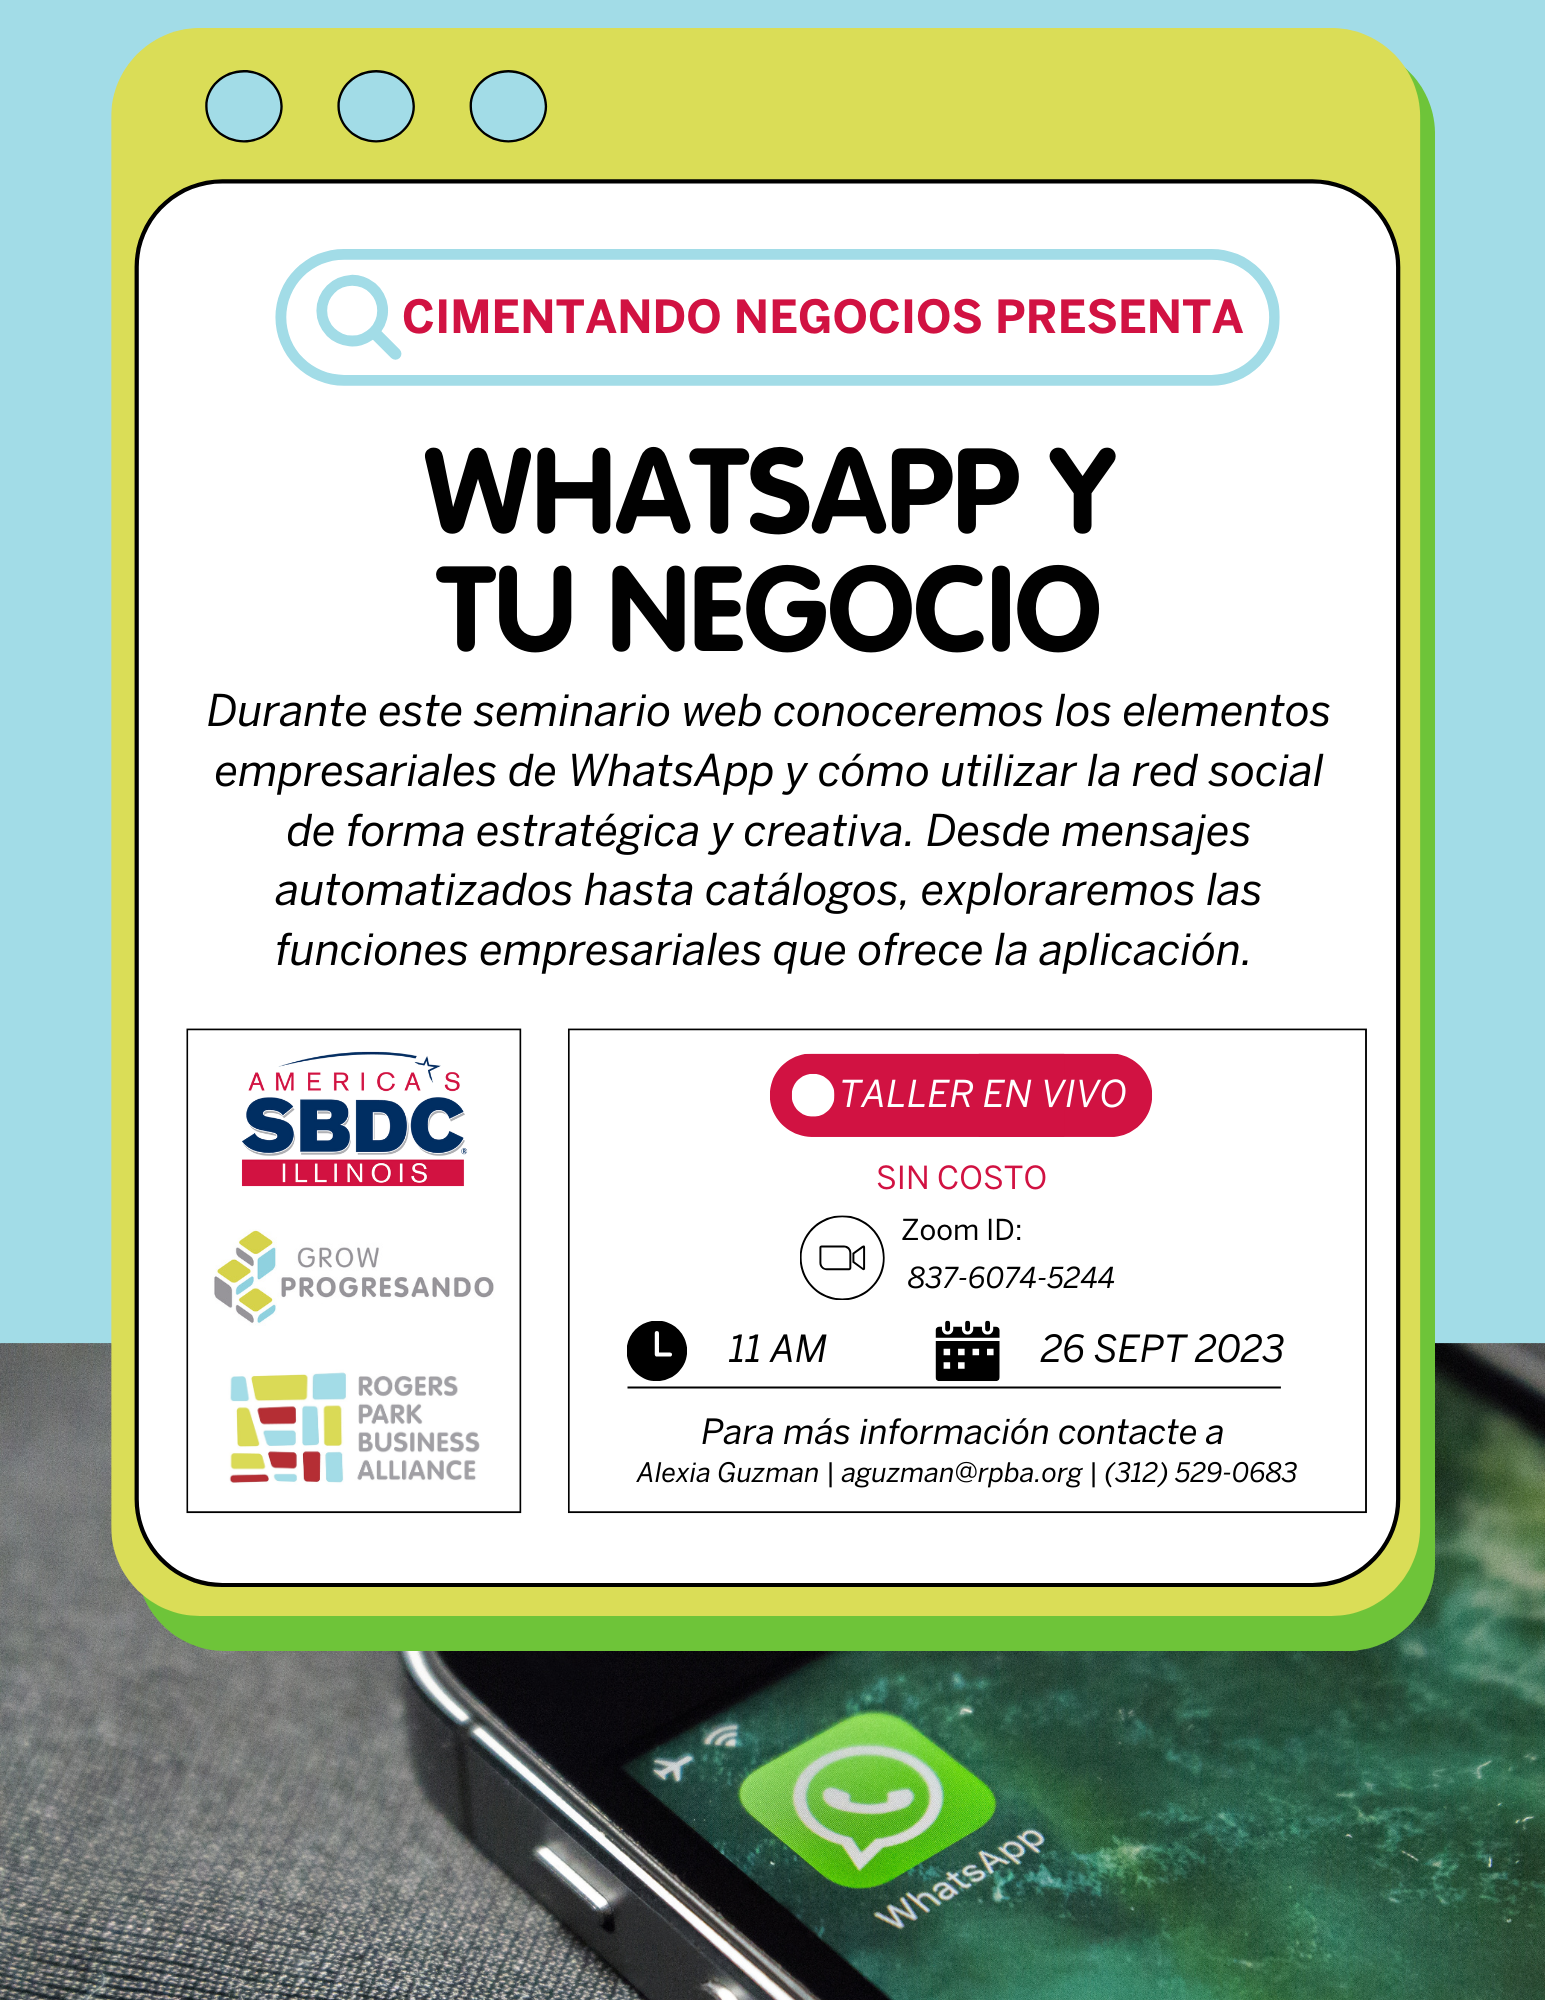 Cimentando Negocios | WhatsApp Y Tu Negocio, rogers-park-business-alliance